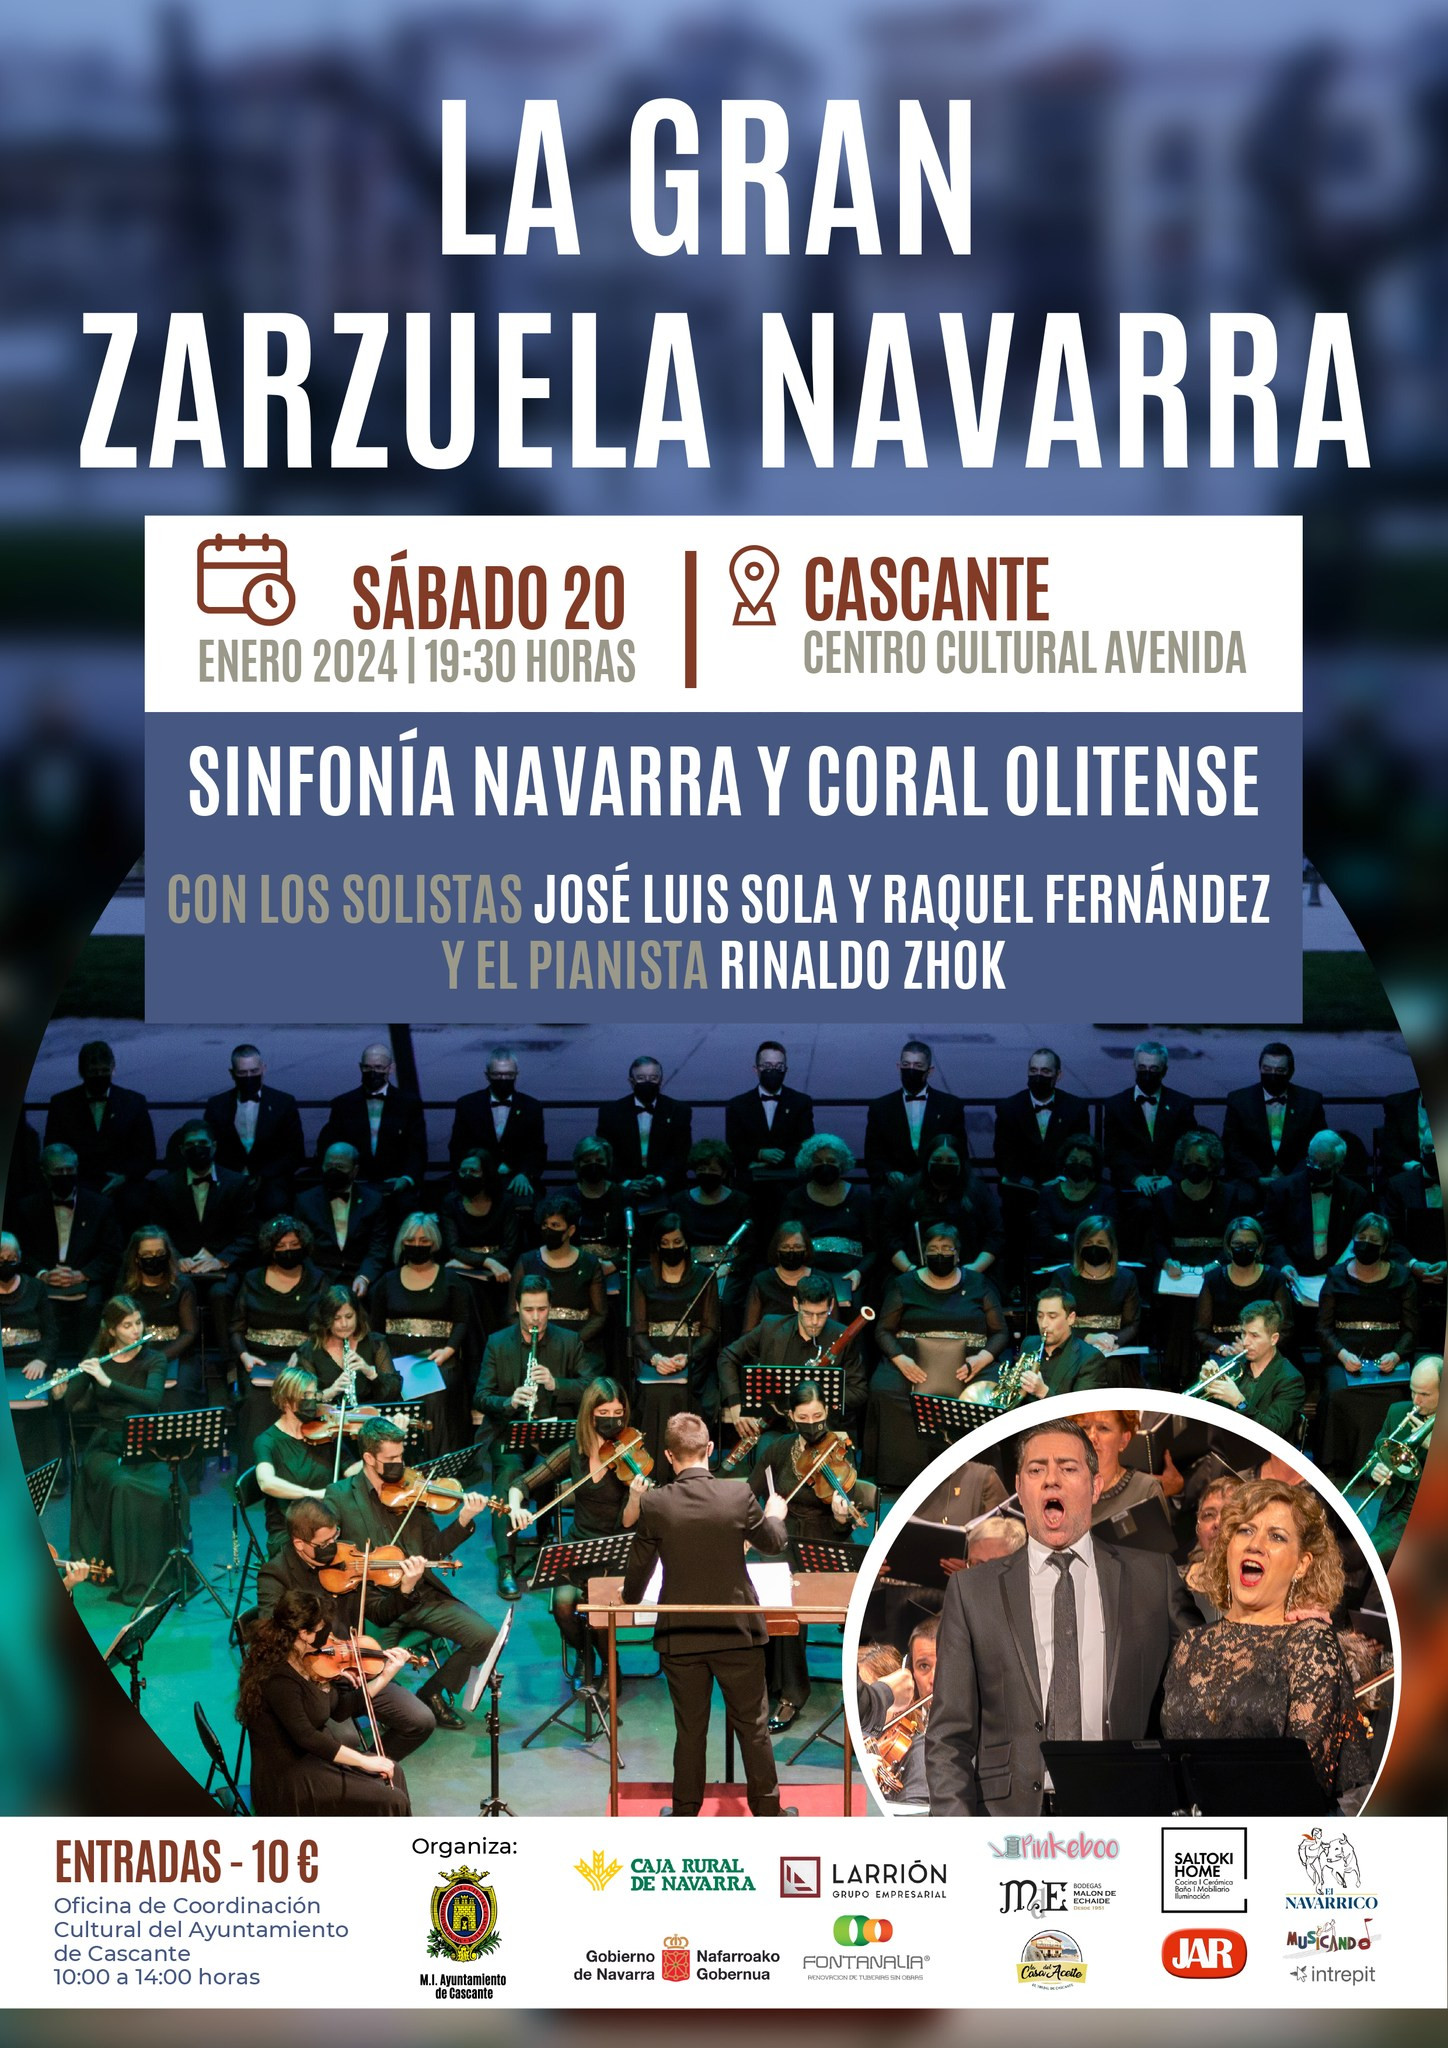 actividades culturales, musica y conciertos, espectáculos, zarzuela, planes en navarra, que hacer en el norte de españa